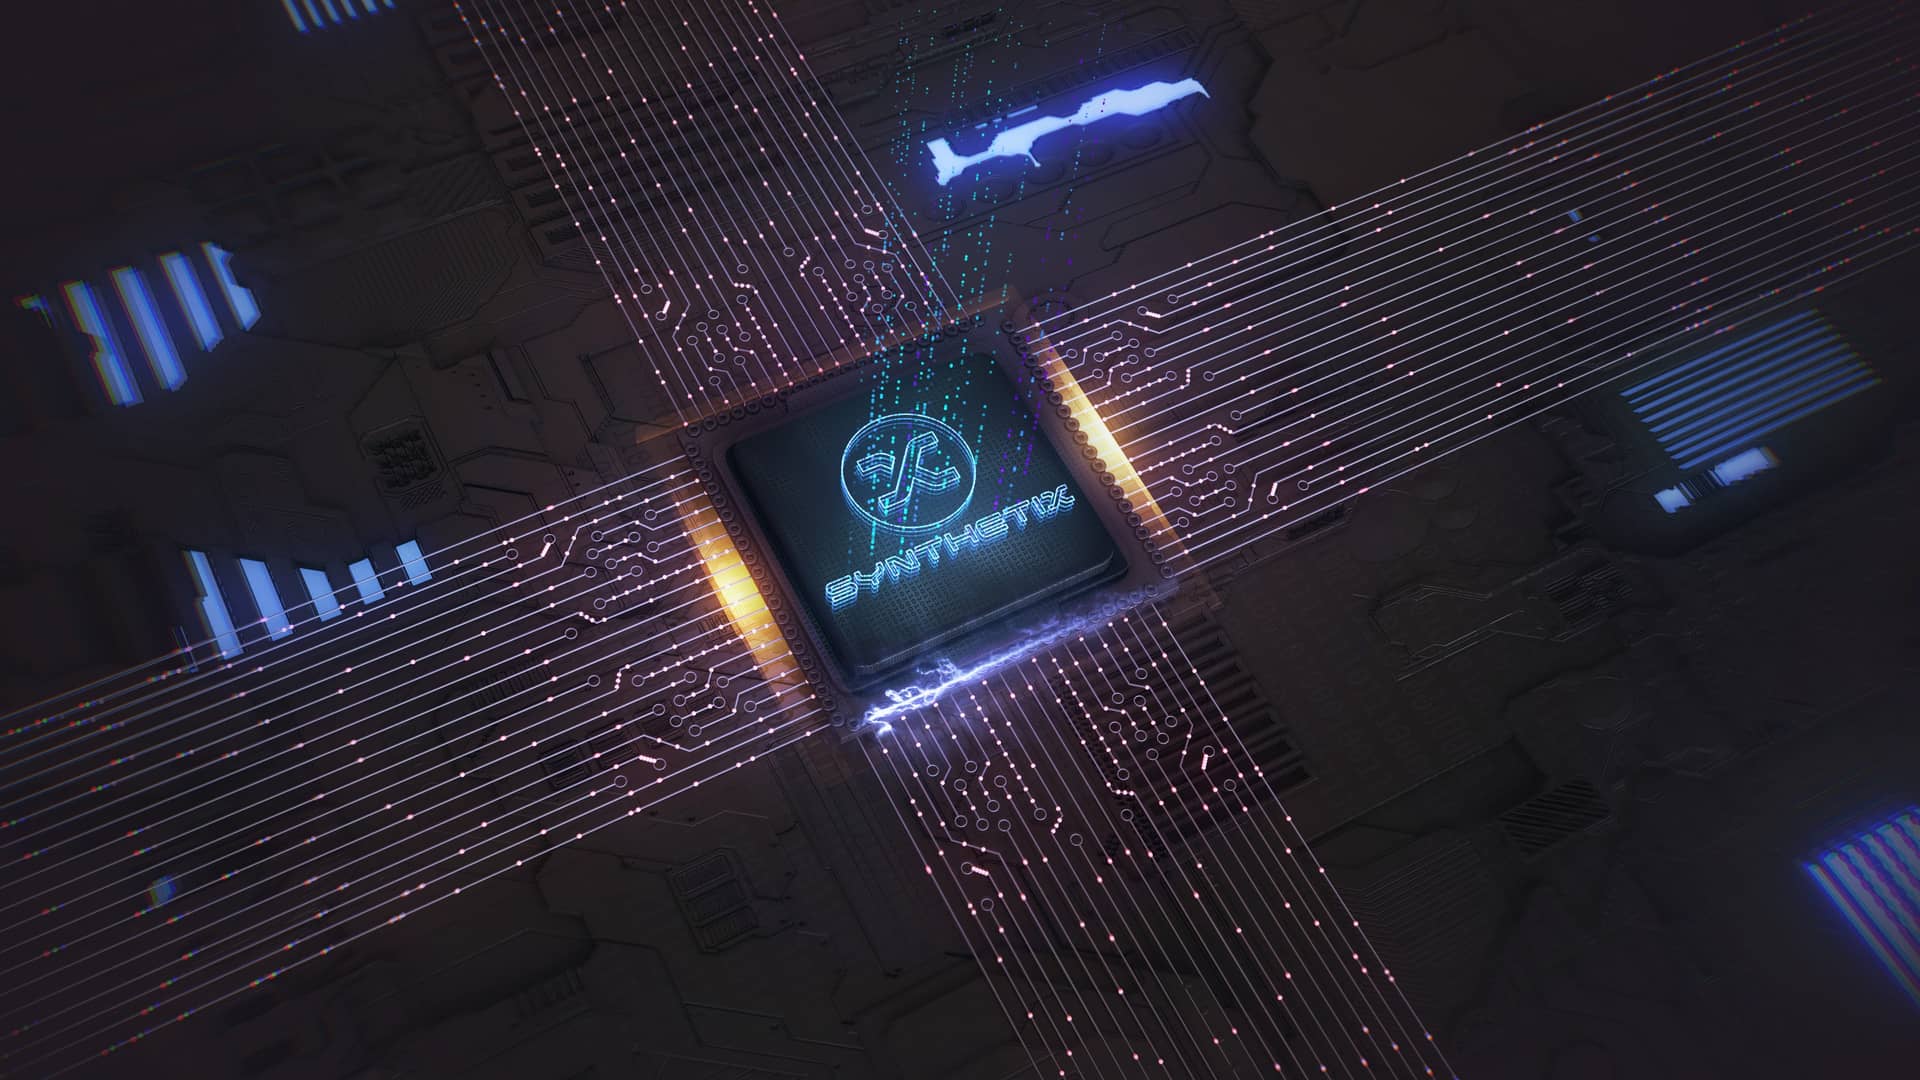 logo de synthetix hecho con luces sobre una simulacion de la tecnologia interior de un dispositivo electronico